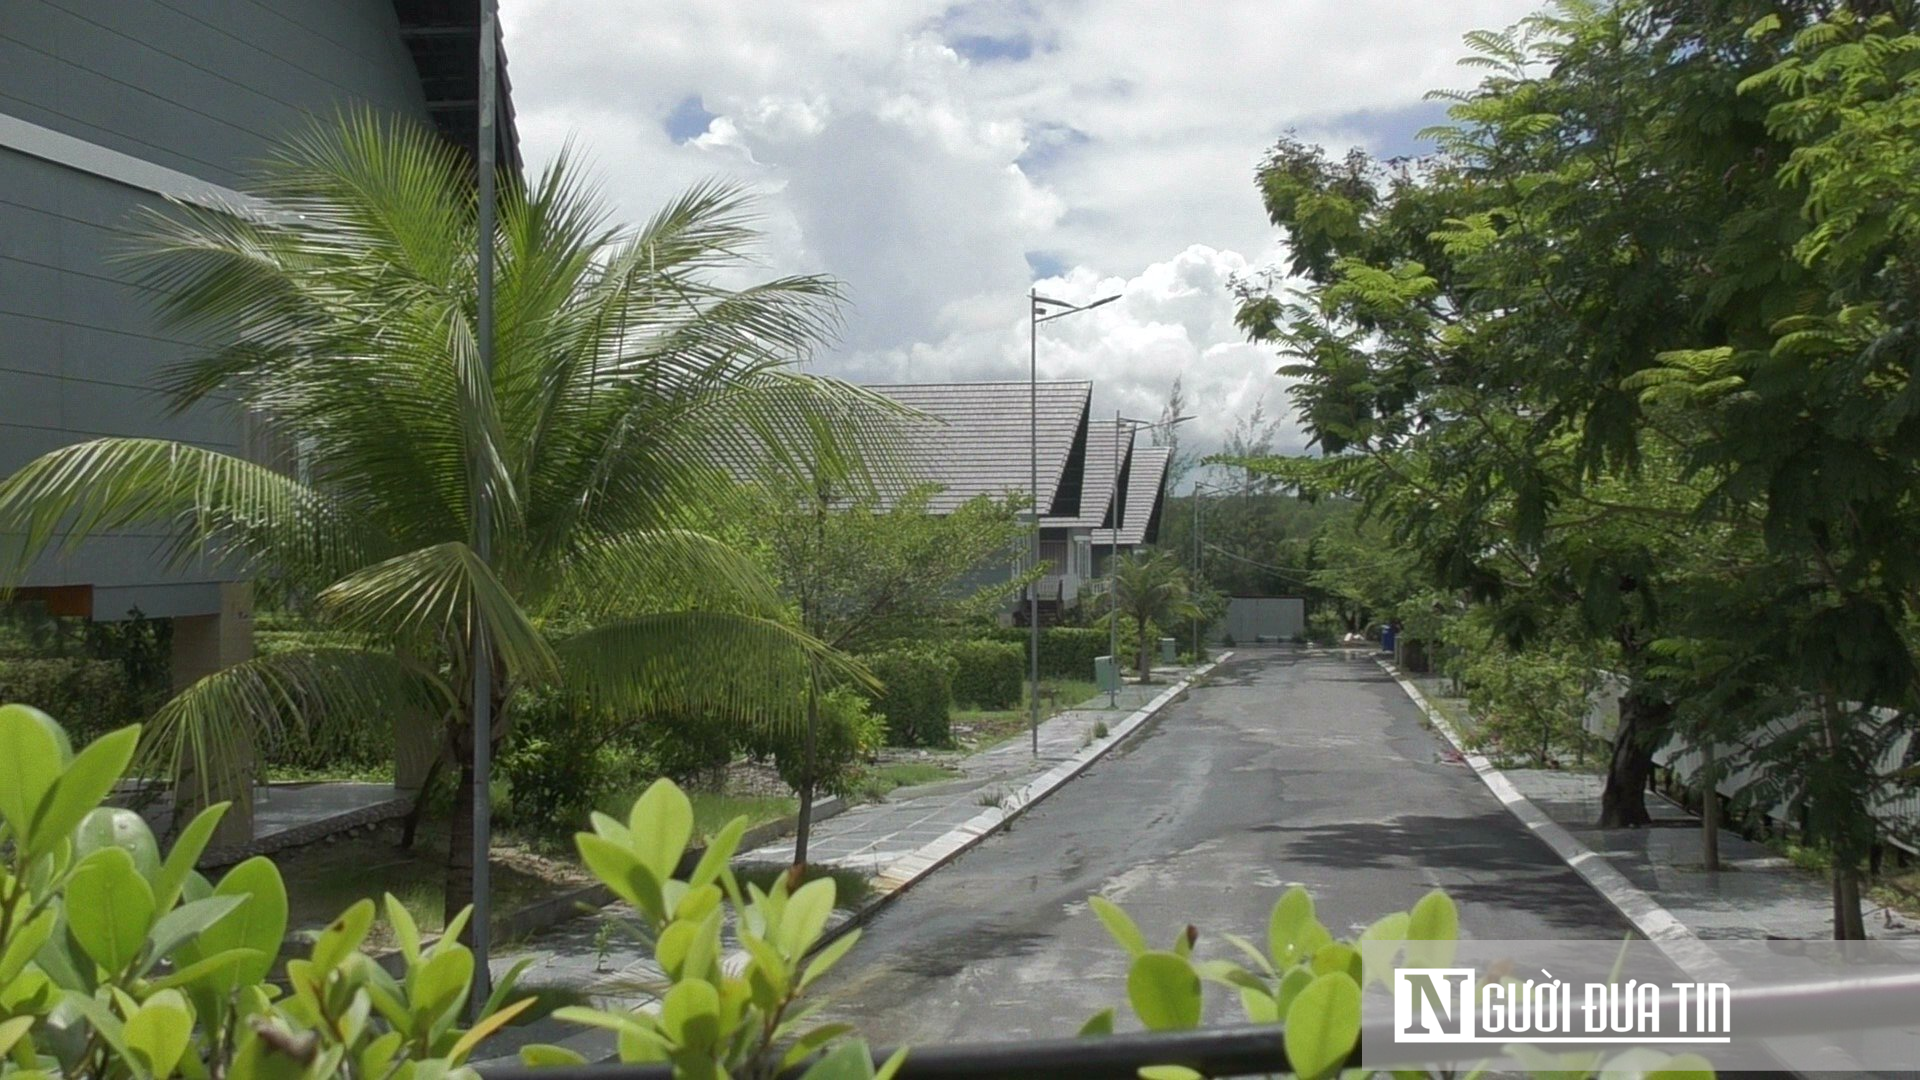 Công ty Kim Tơ cho thuê biệt thự nguyên căn cho 8 khách với giá 4,2 triệu đồng/căn (ảnh: N.P.V).